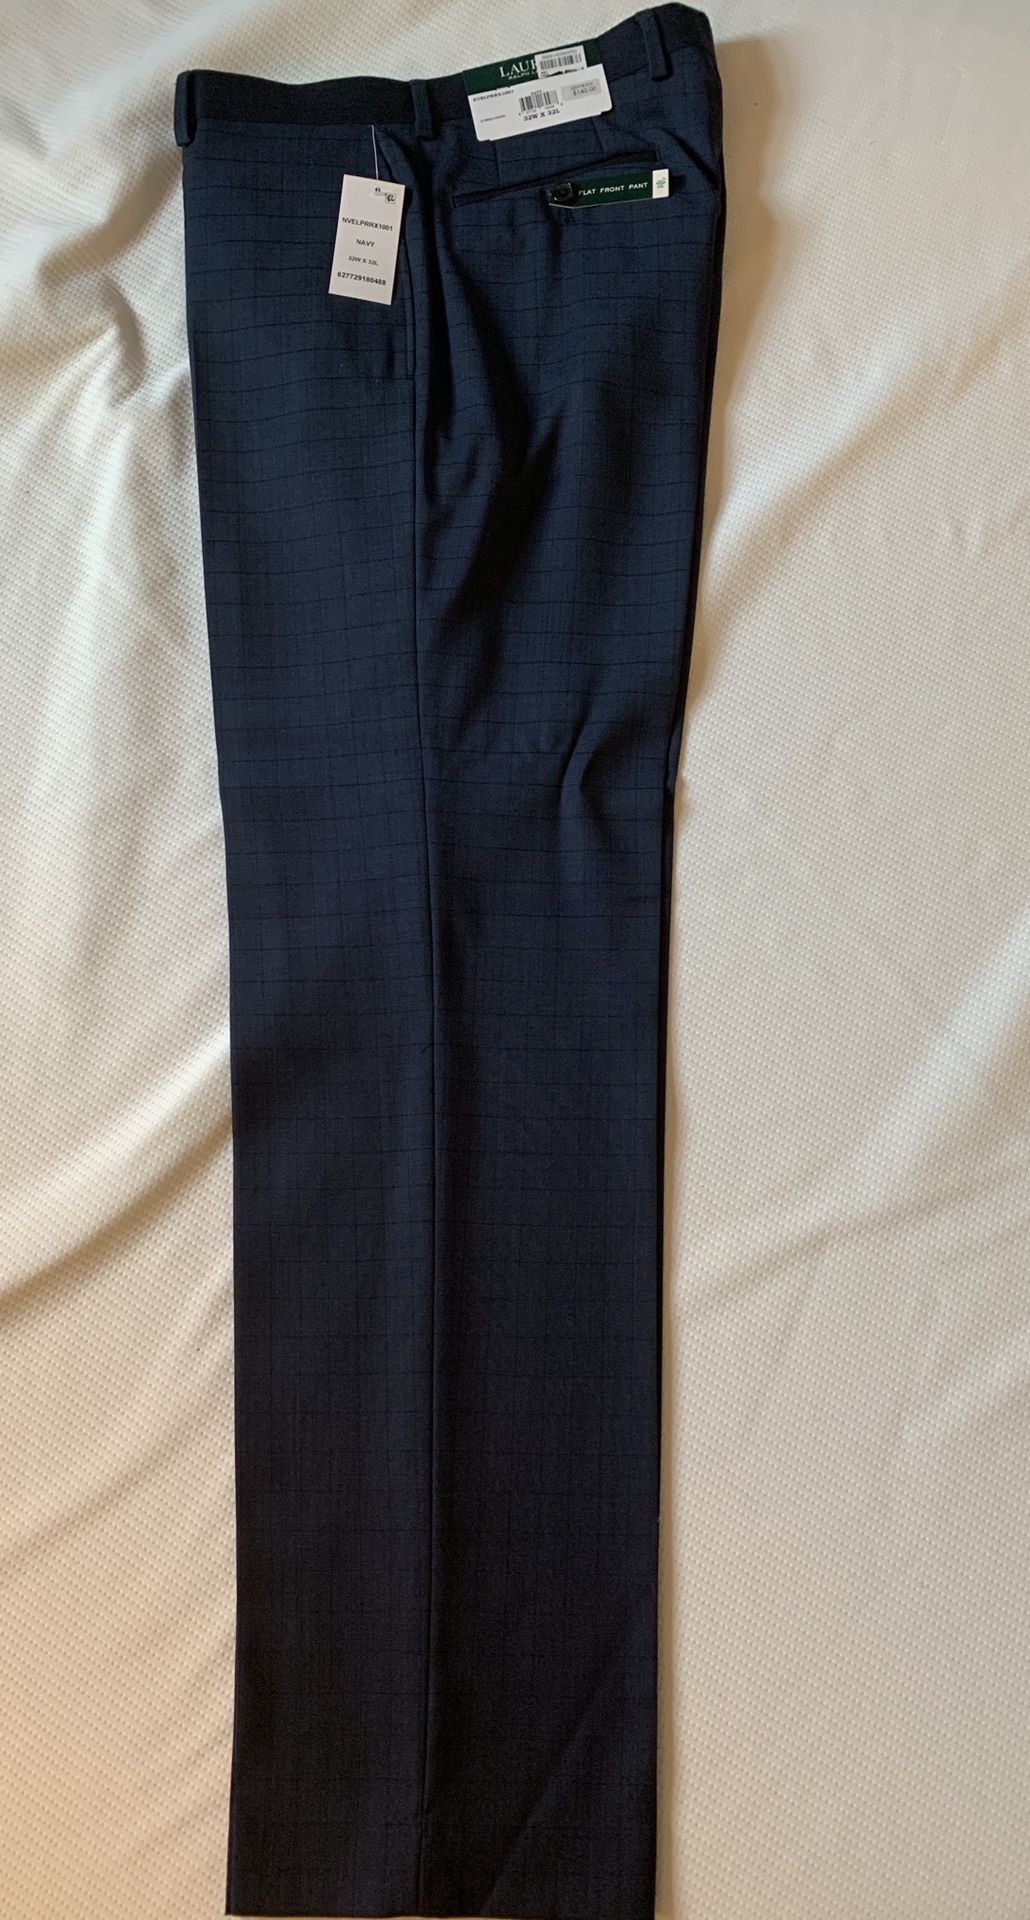 New Lauren Ralph Lauren 100% Wool Men’s Dress Pants 32 W x 32 L